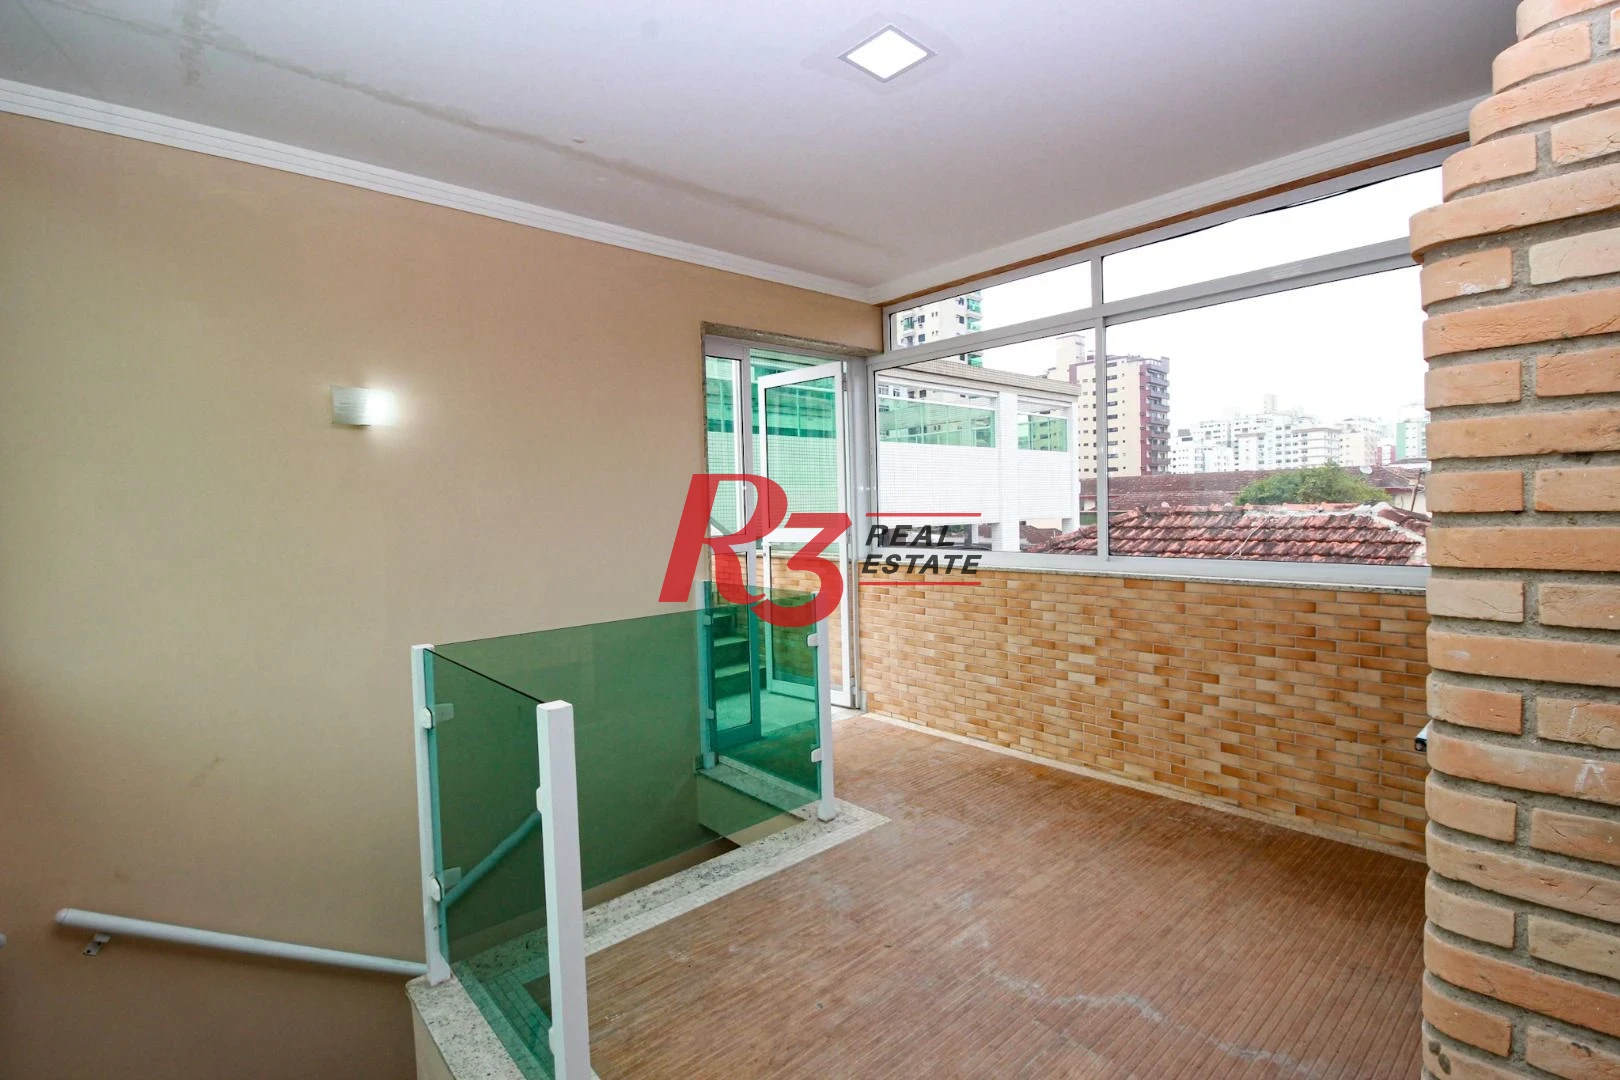 Sobrado com 4 dormitórios à venda, 320 m² por R$ 2.200.000,00 - Pompéia - Santos/SP